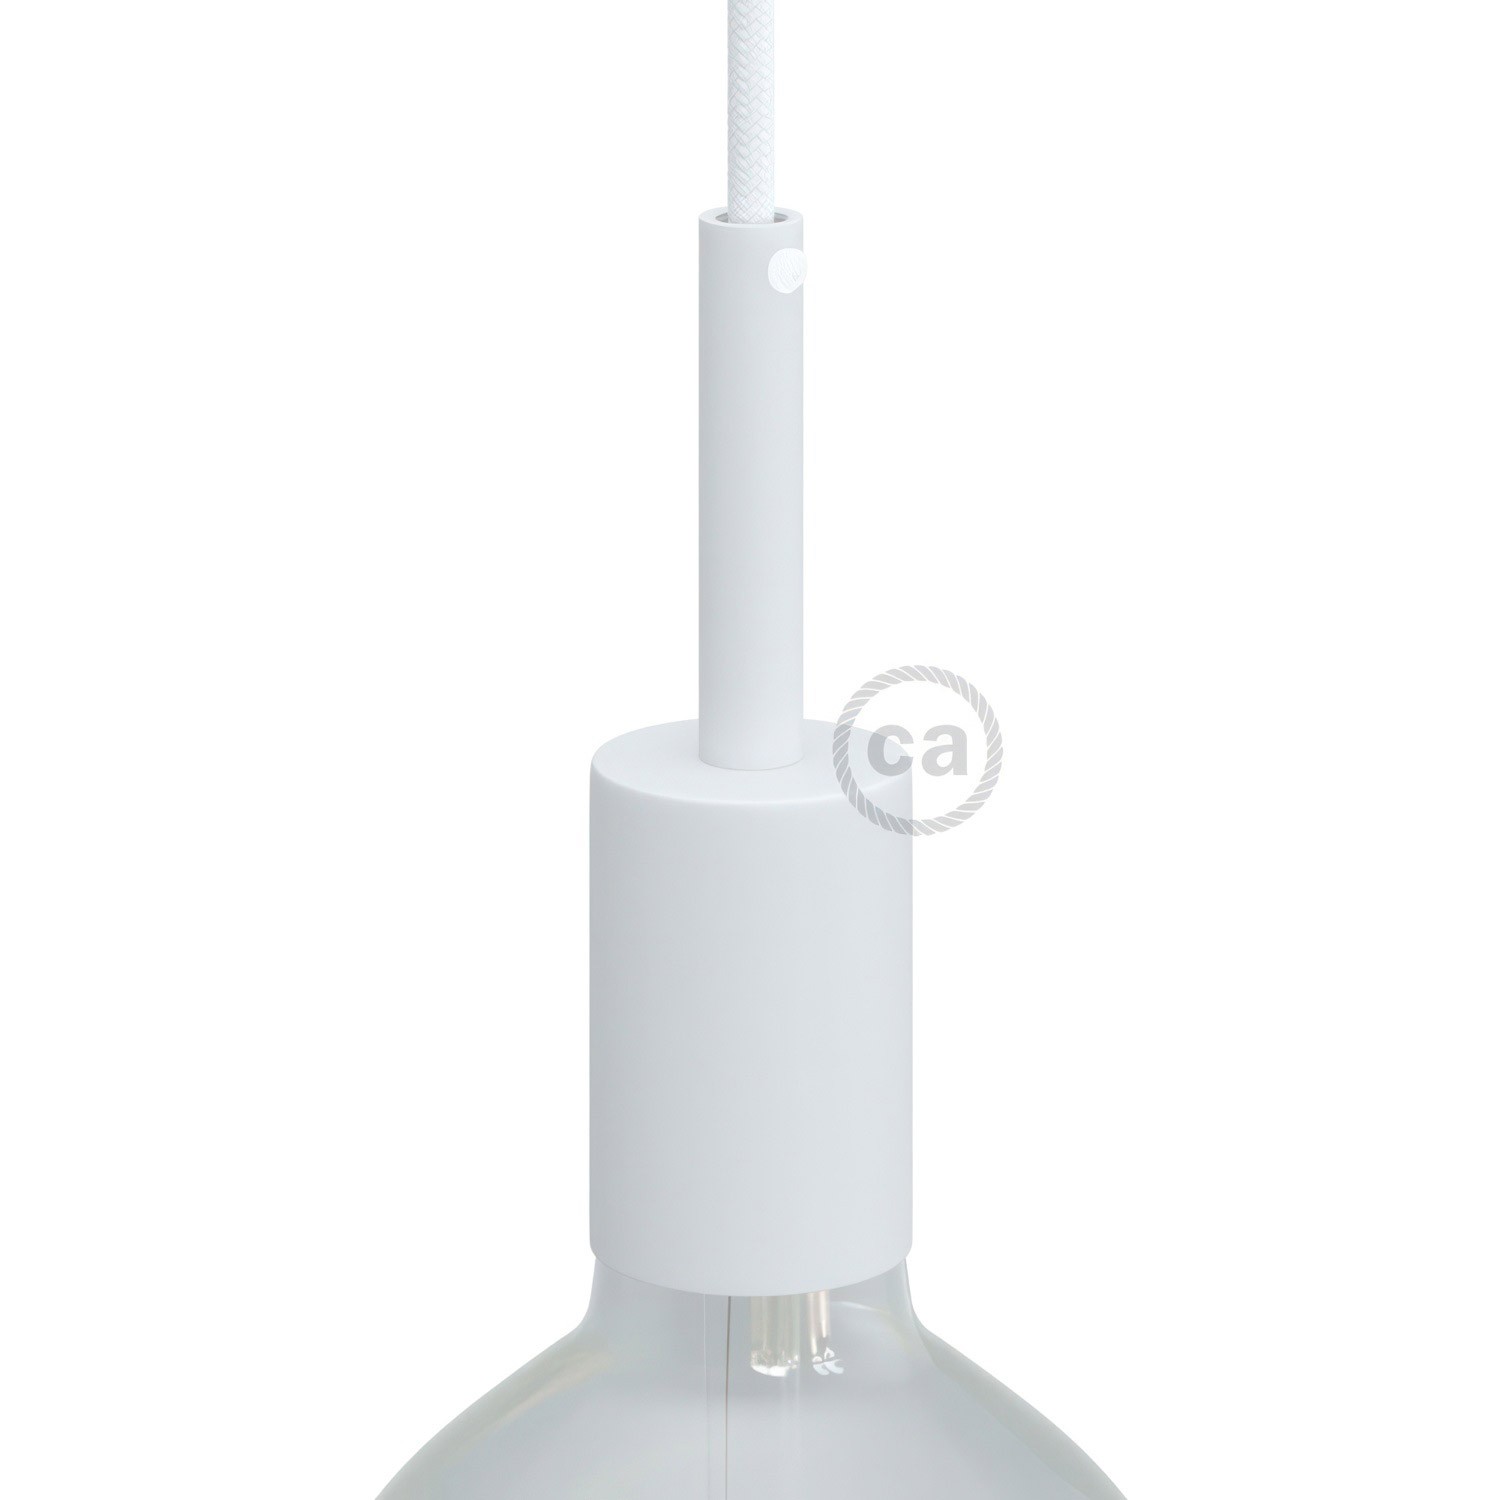 Kit cylindrisk lamphållare E27 i metall med 7 cm lång dravaglastare